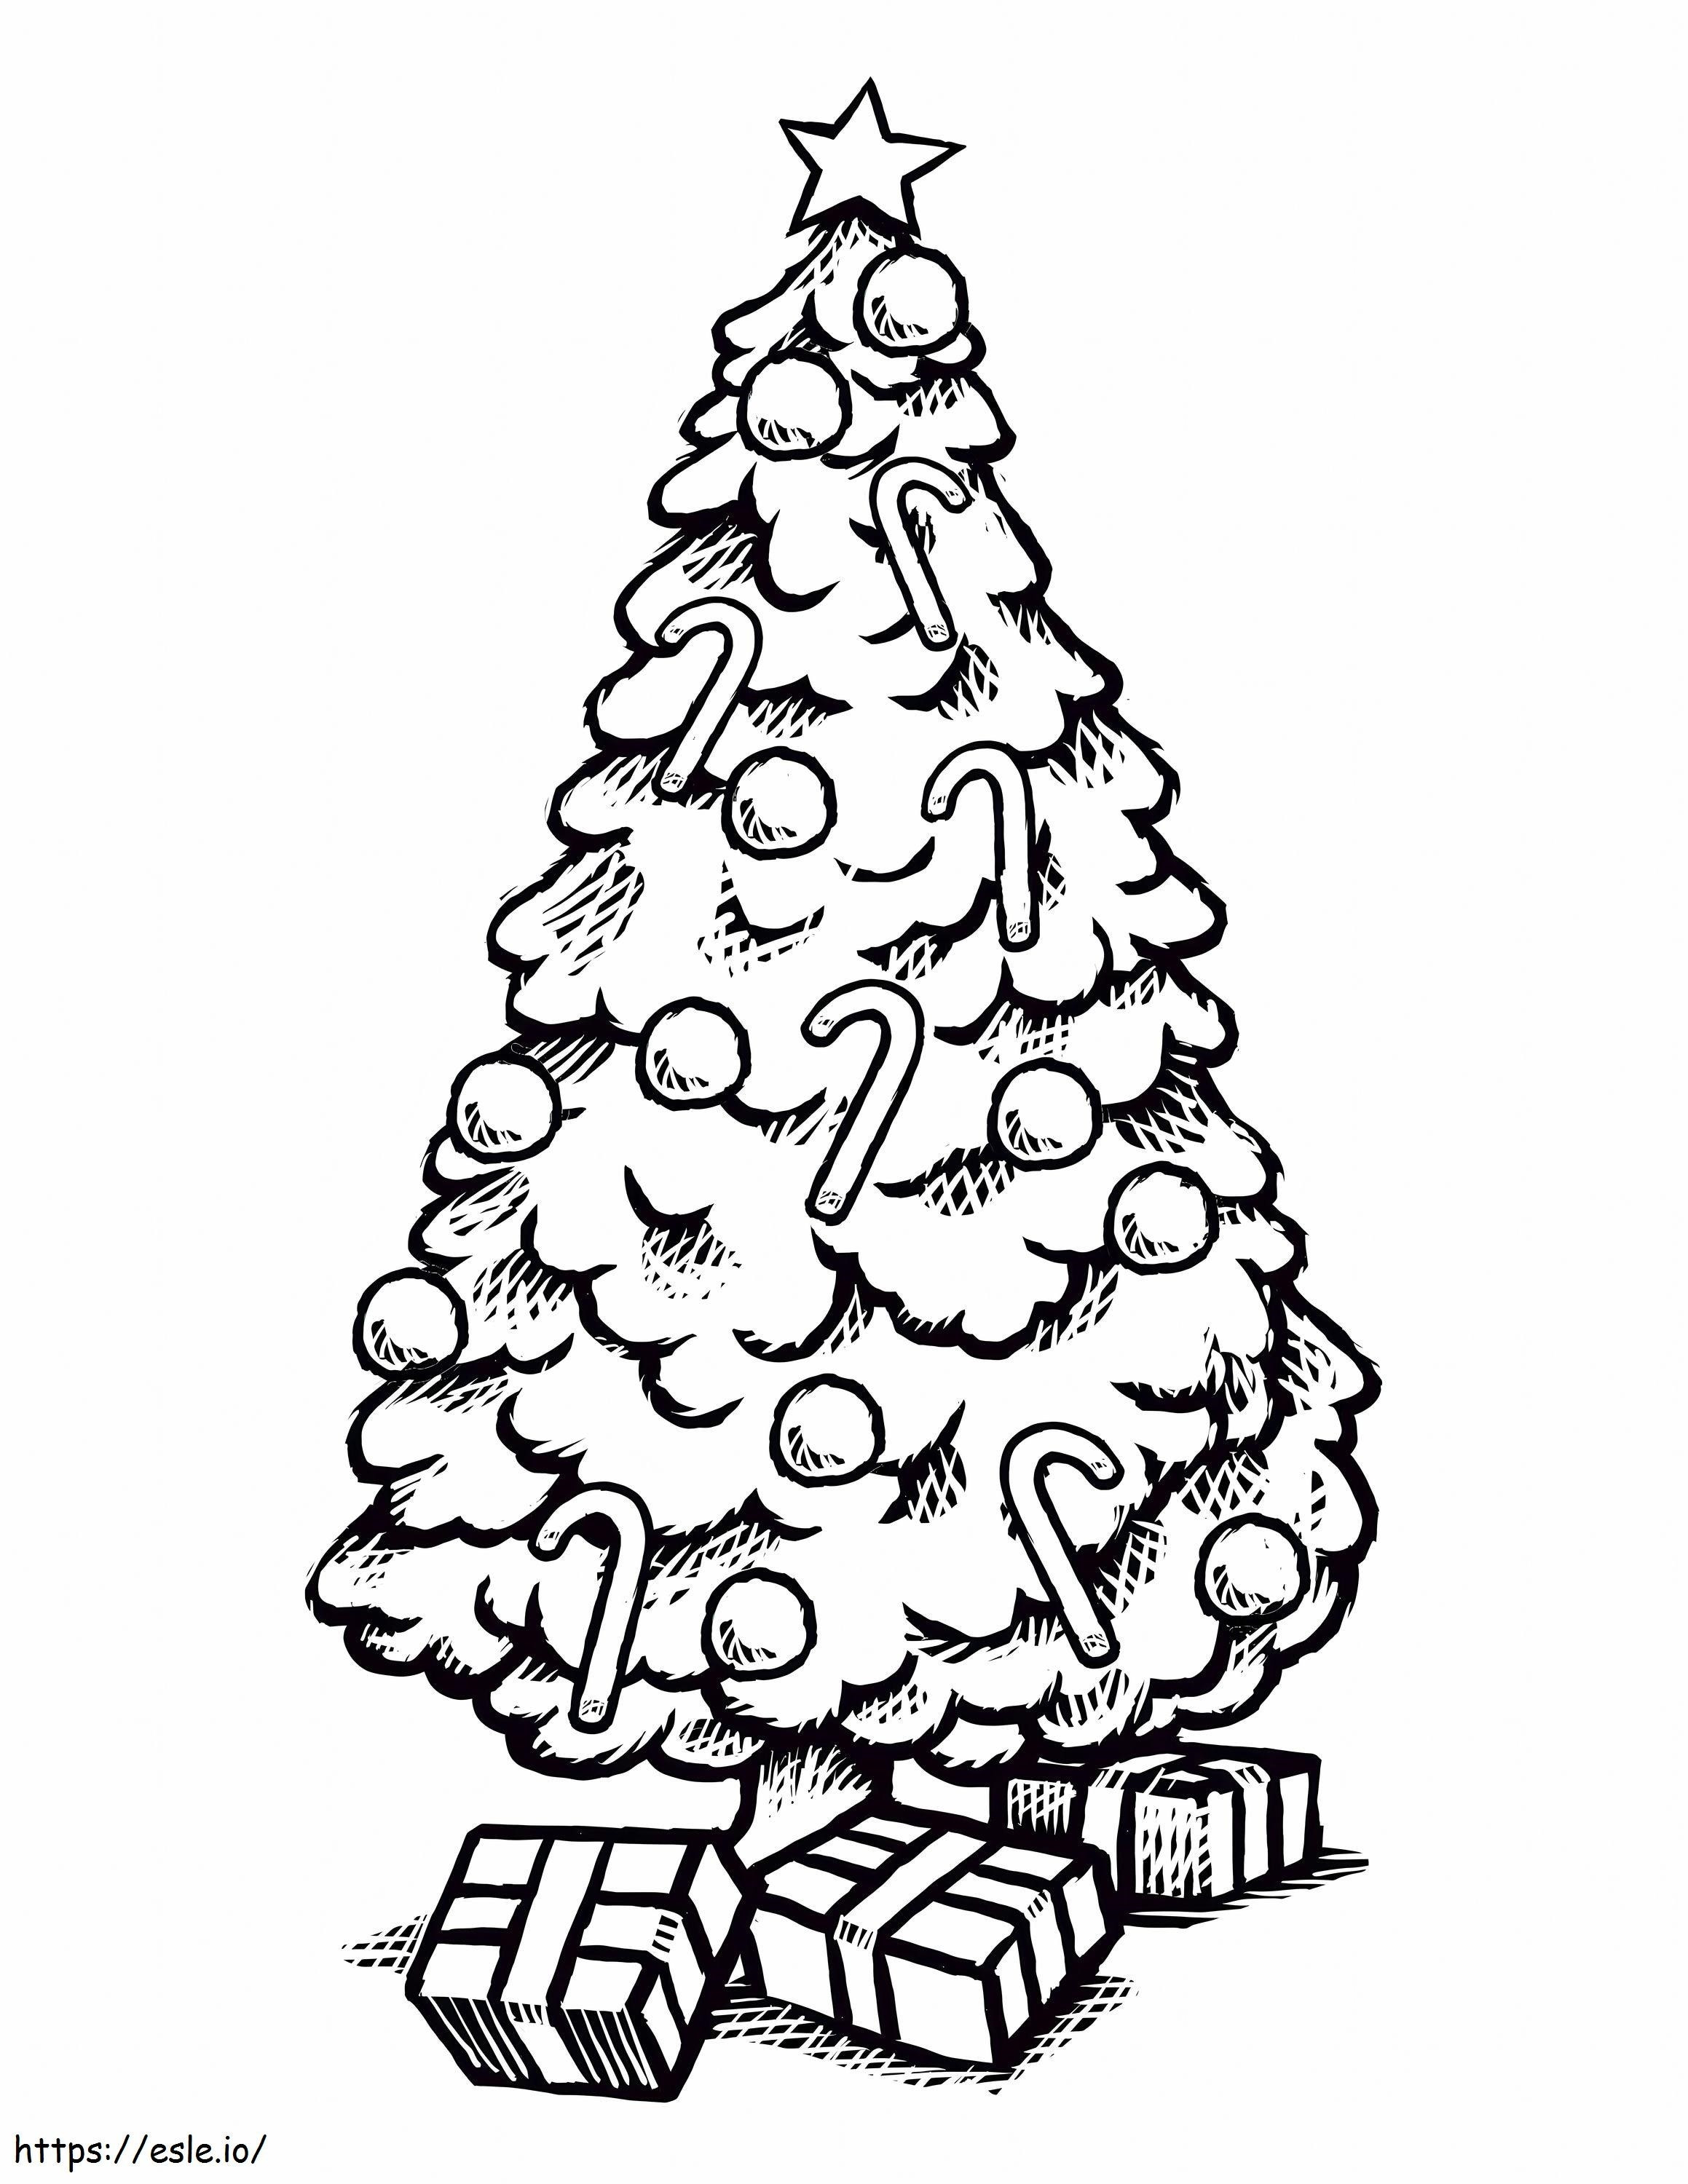 Zeichnen Sie einen Weihnachtsbaum mit maßstabsgetreuen Geschenkboxen ausmalbilder